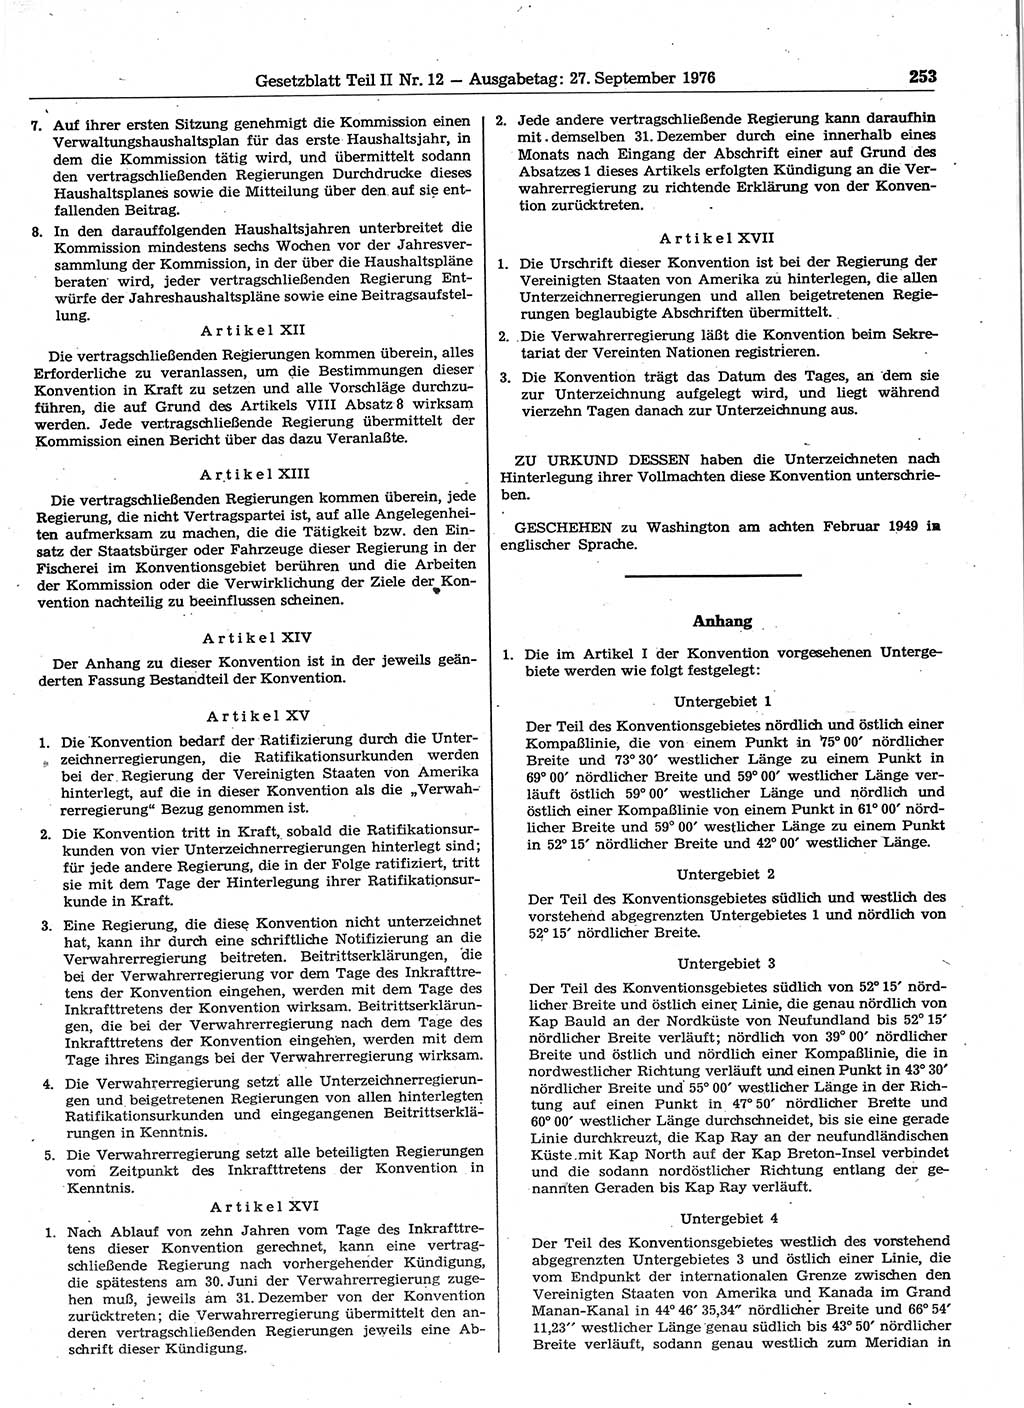 Gesetzblatt (GBl.) der Deutschen Demokratischen Republik (DDR) Teil ⅠⅠ 1976, Seite 253 (GBl. DDR ⅠⅠ 1976, S. 253)